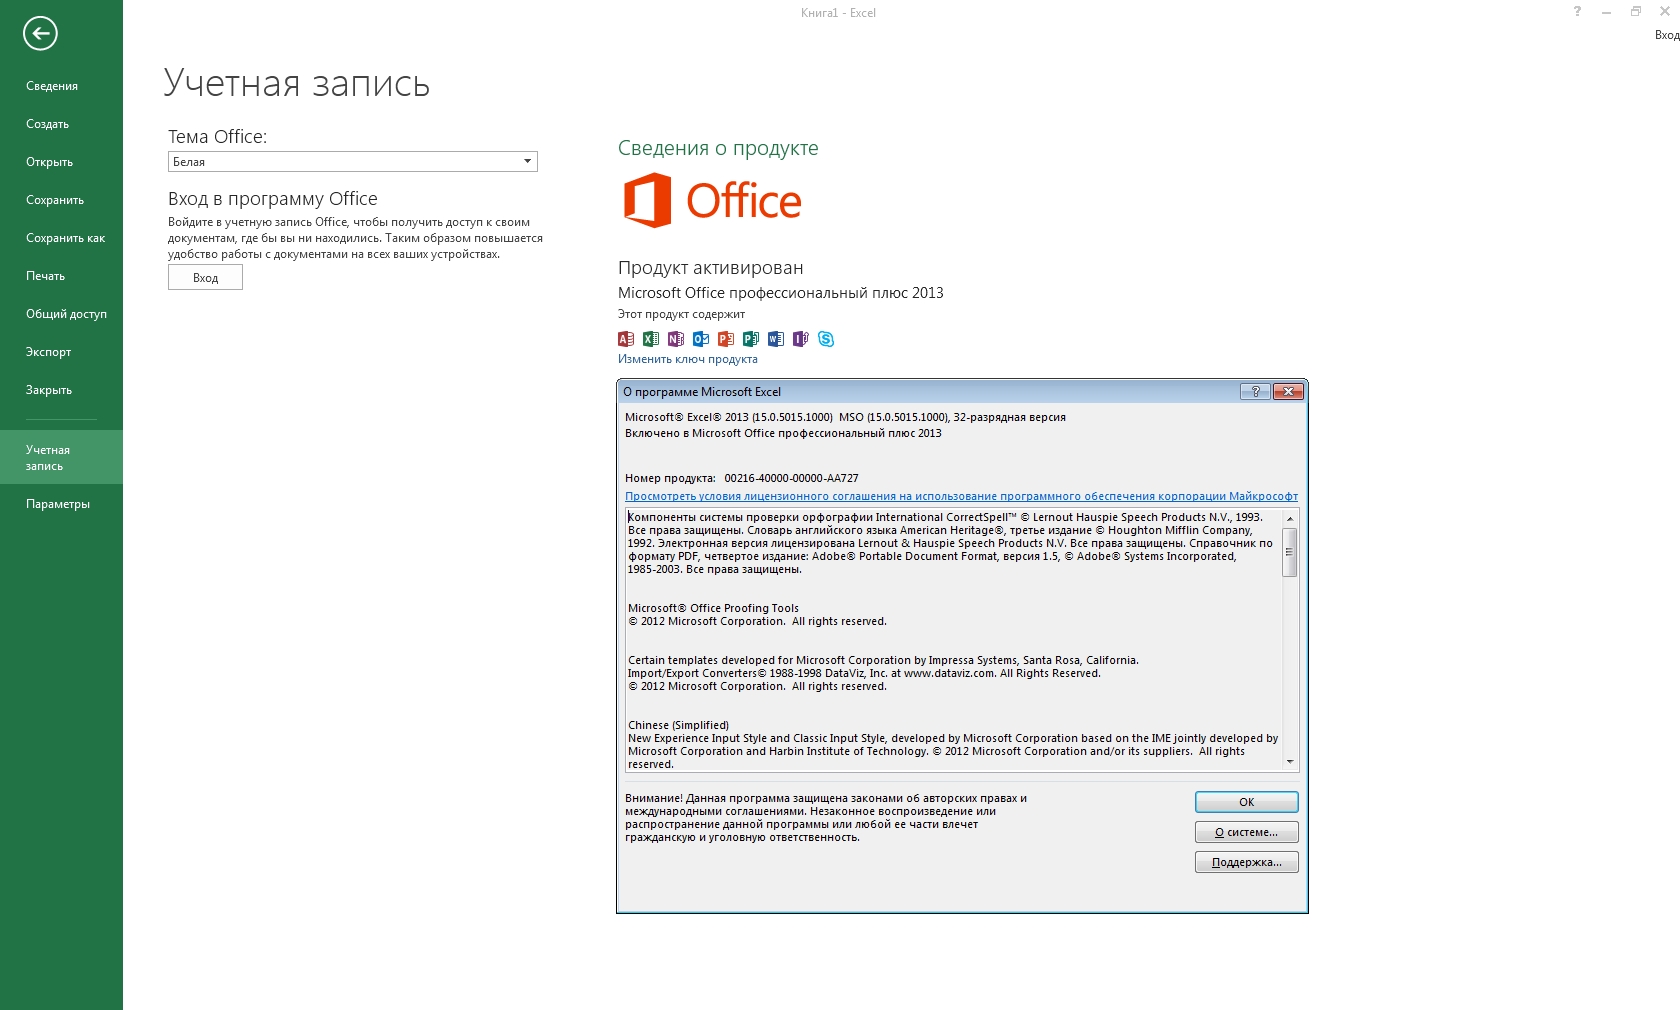 Включи версию 20. Microsoft Office 2013 sp1 professional Plus. Microsoft Office 2013 Pro Plus. Фото программы офис 2013. Программа для активации Майкрософт офис.